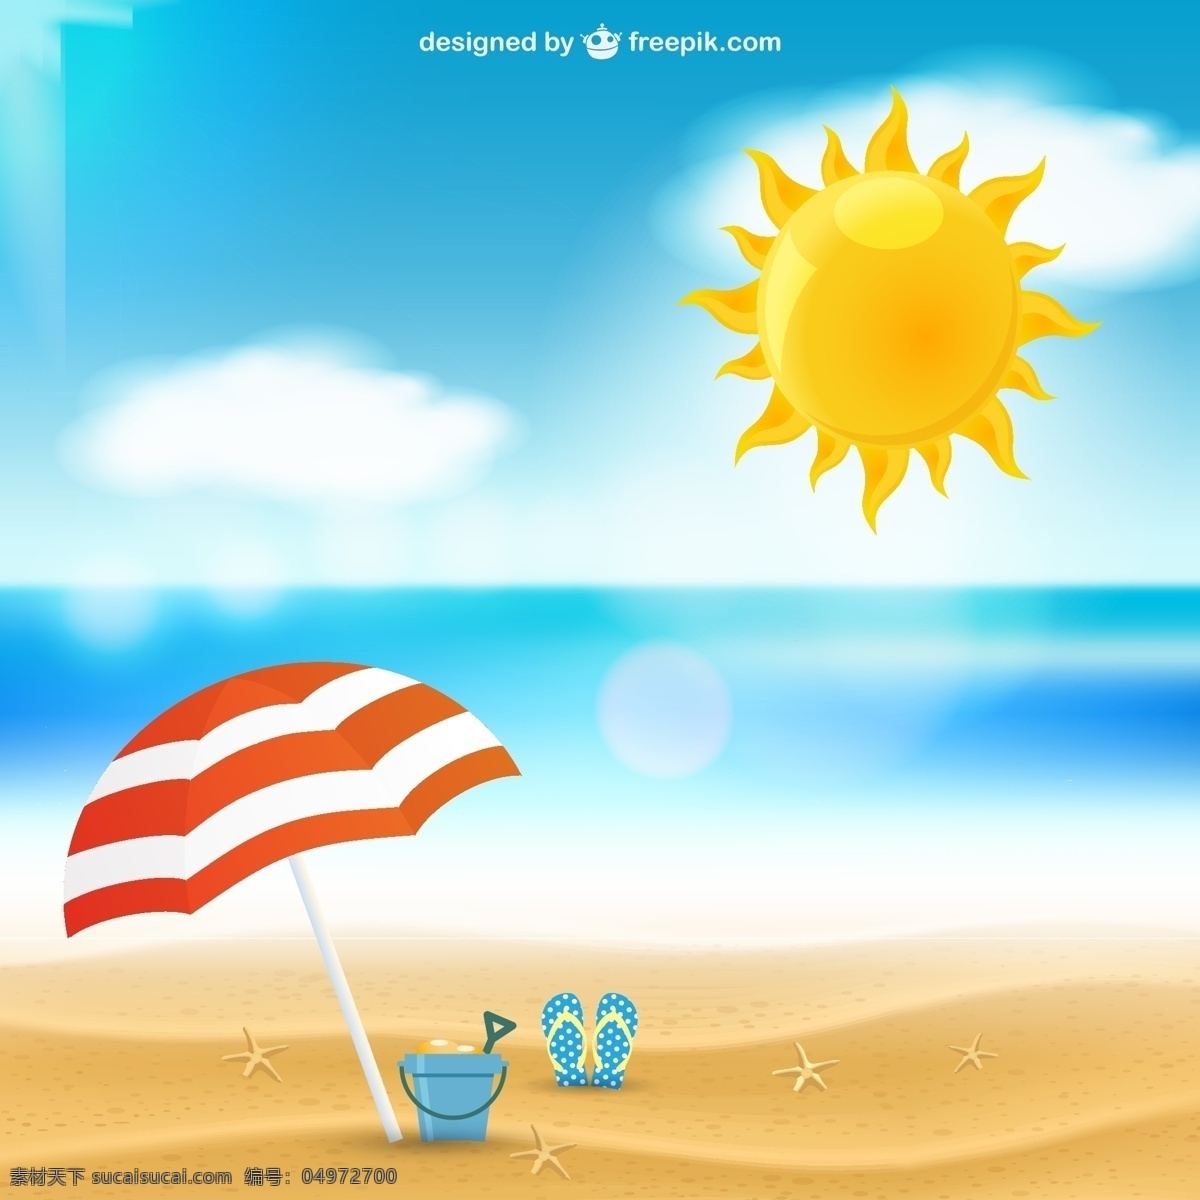 夏日 度假 海滩 矢量 太阳 阳光 云朵 大海 沙滩拖鞋 遮阳伞 风景 夏 海星 矢量图